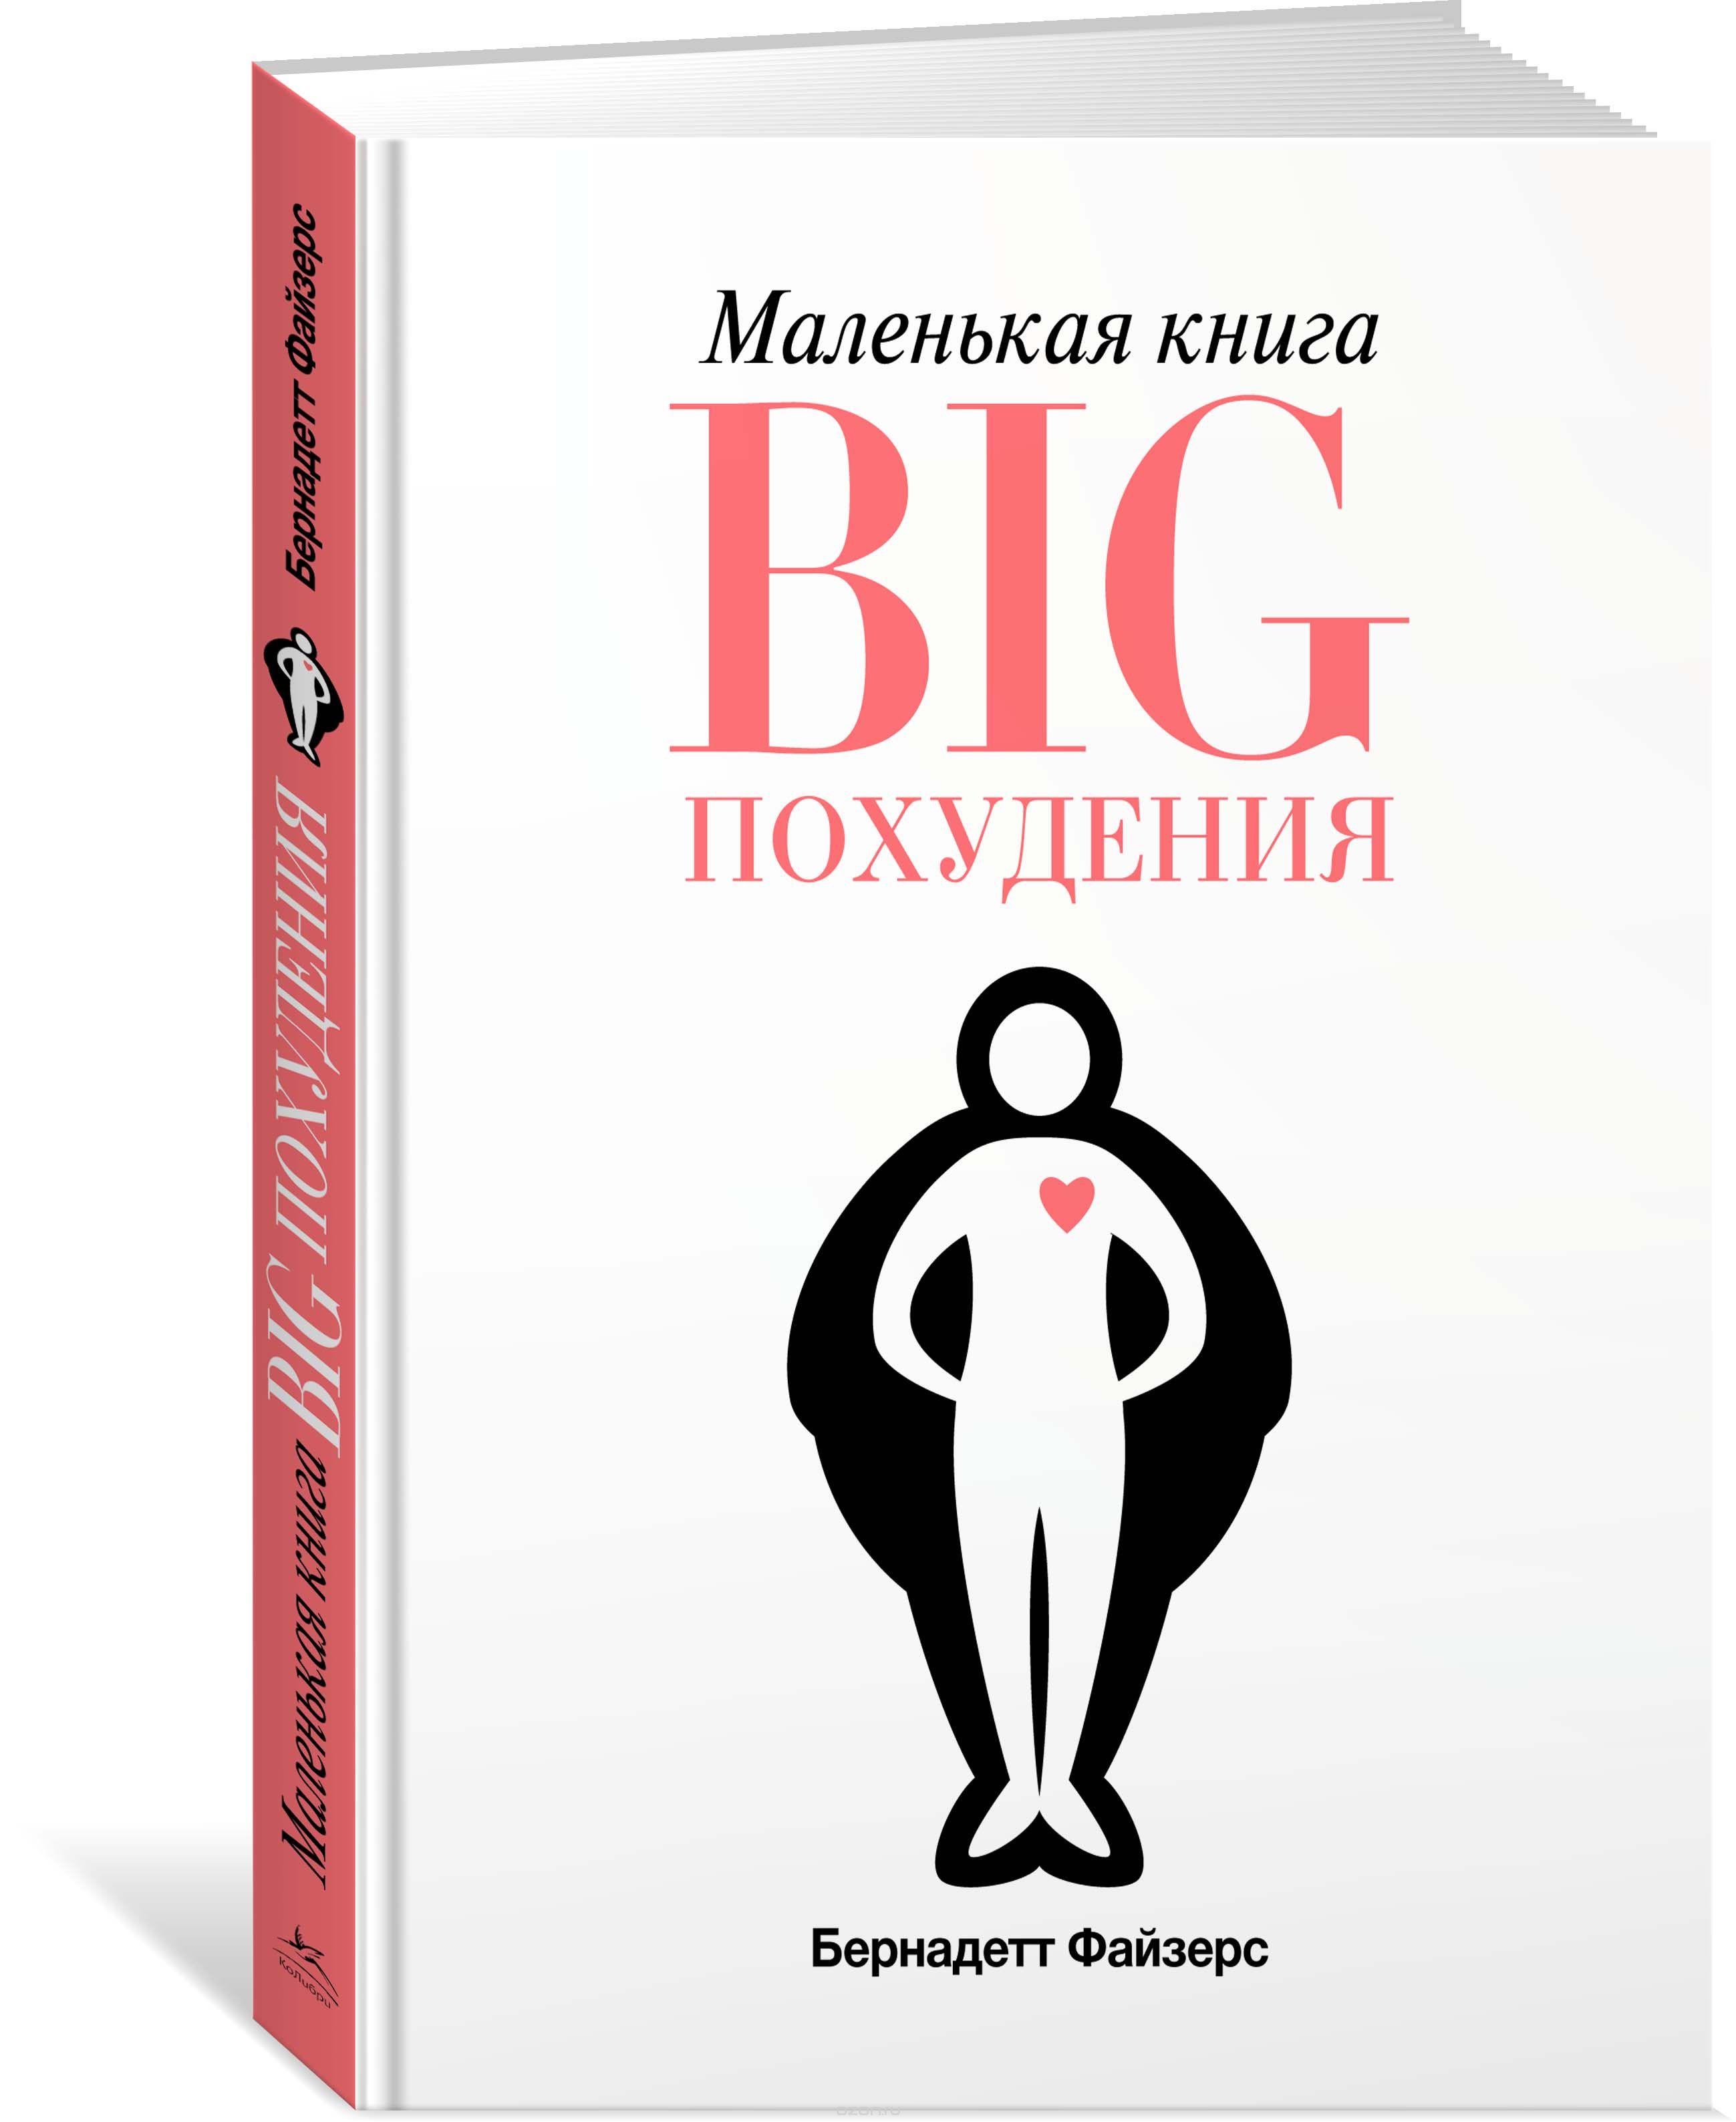 Маленькая книга BIG похудения, Бернадетт Файзерс